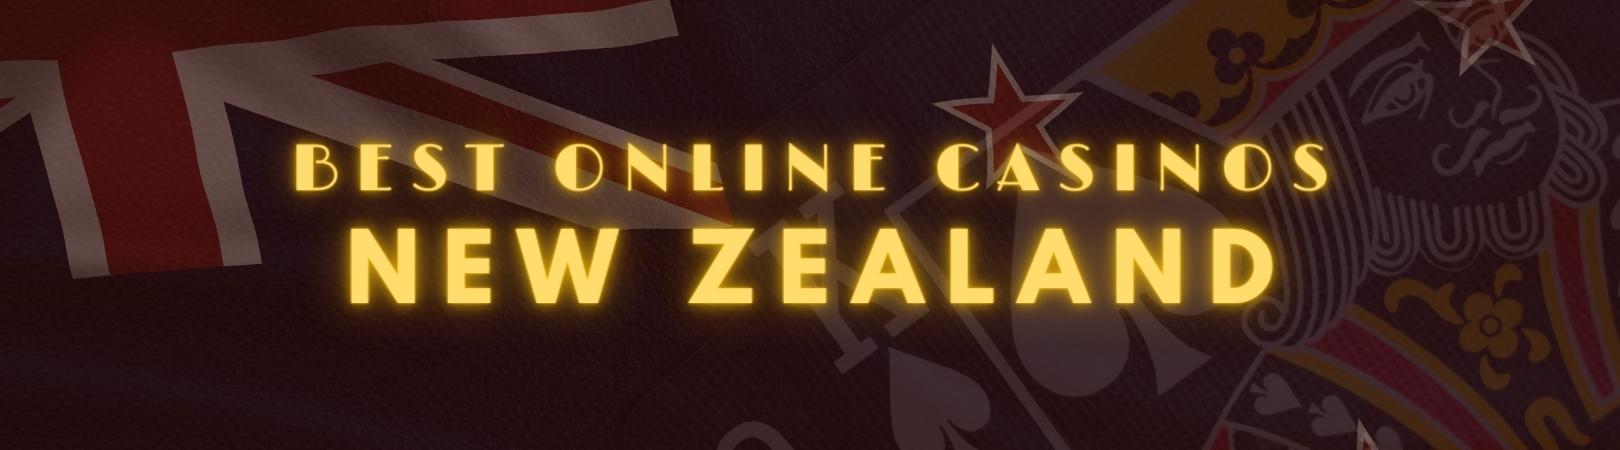 best online casinos New Zealand img